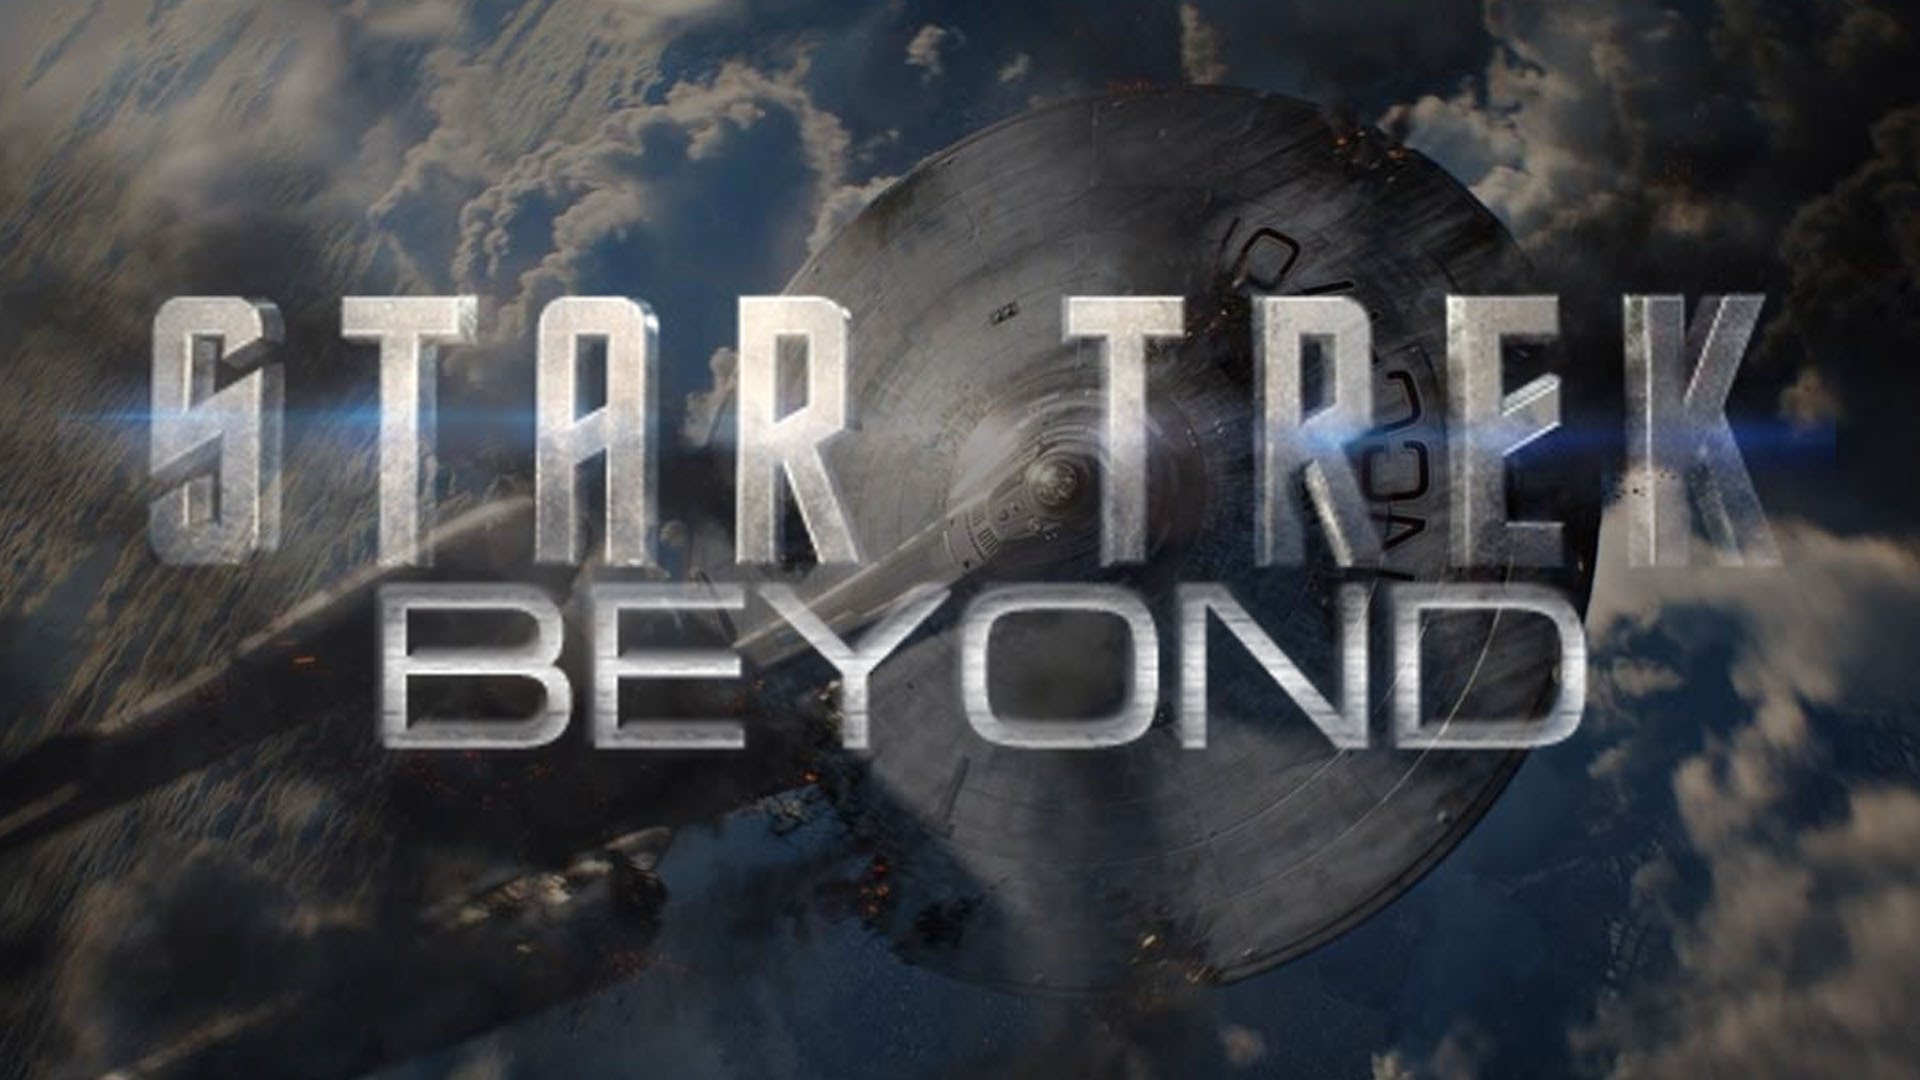 star trek beyond watch free online